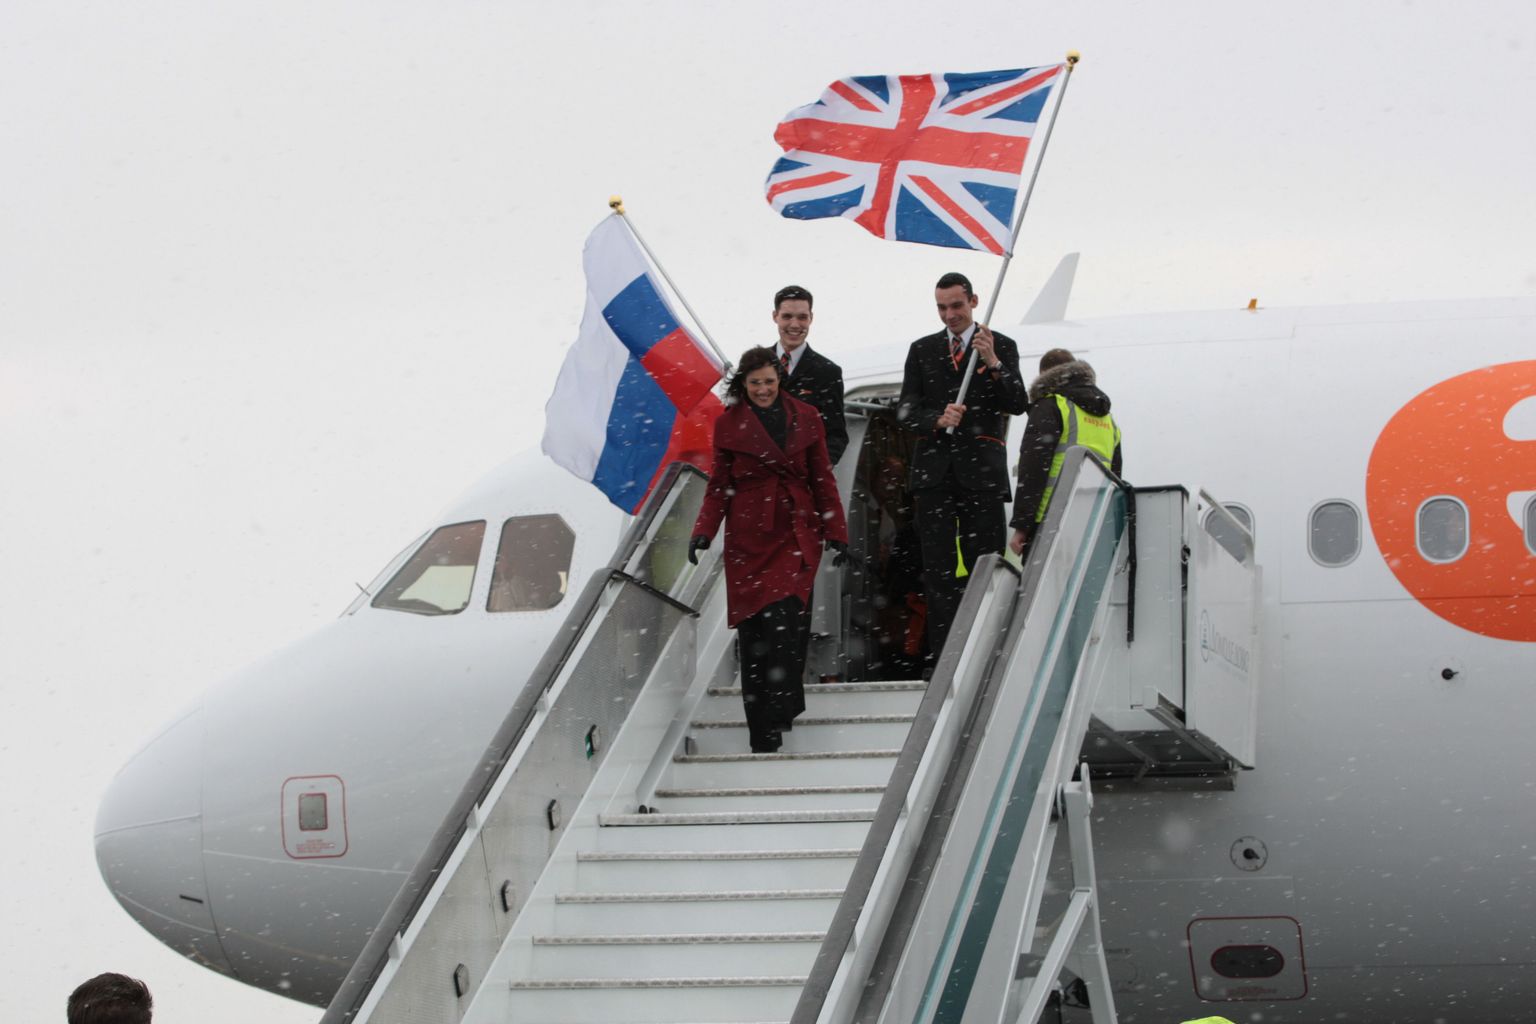 Märts 2013: EasyJeti tegevjuht Carolyn McCall saabub lennufirma esimese lennuga lippude lehvides Moskva Domodedovo lennuväljale. Aasta hiljem asus odavlennufirma Venemaa turult taanduma, see kord lippe enam ei lehvitata.